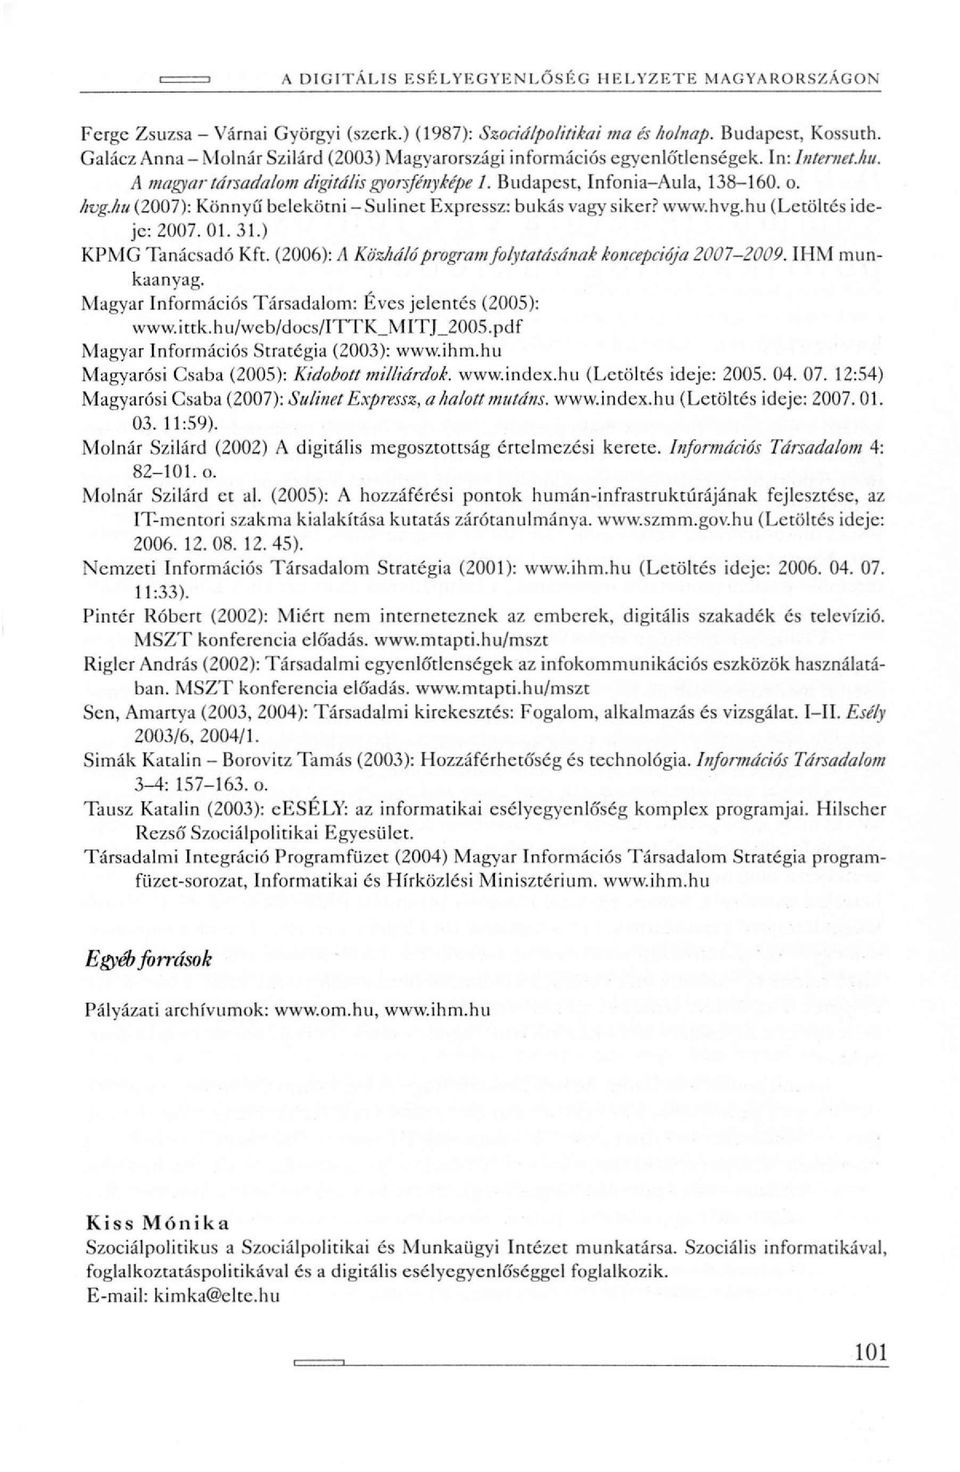 hu (2007): Könnyű belekötni - Sulinet Expressz: bukás vagy siker? www.hvg.hu (Letöltés ideje: 2007. 01. 31.) KPMG Tanácsadó Kft. (2006): A Köz/iáló program folytatásának koncepciója 2007-2009.